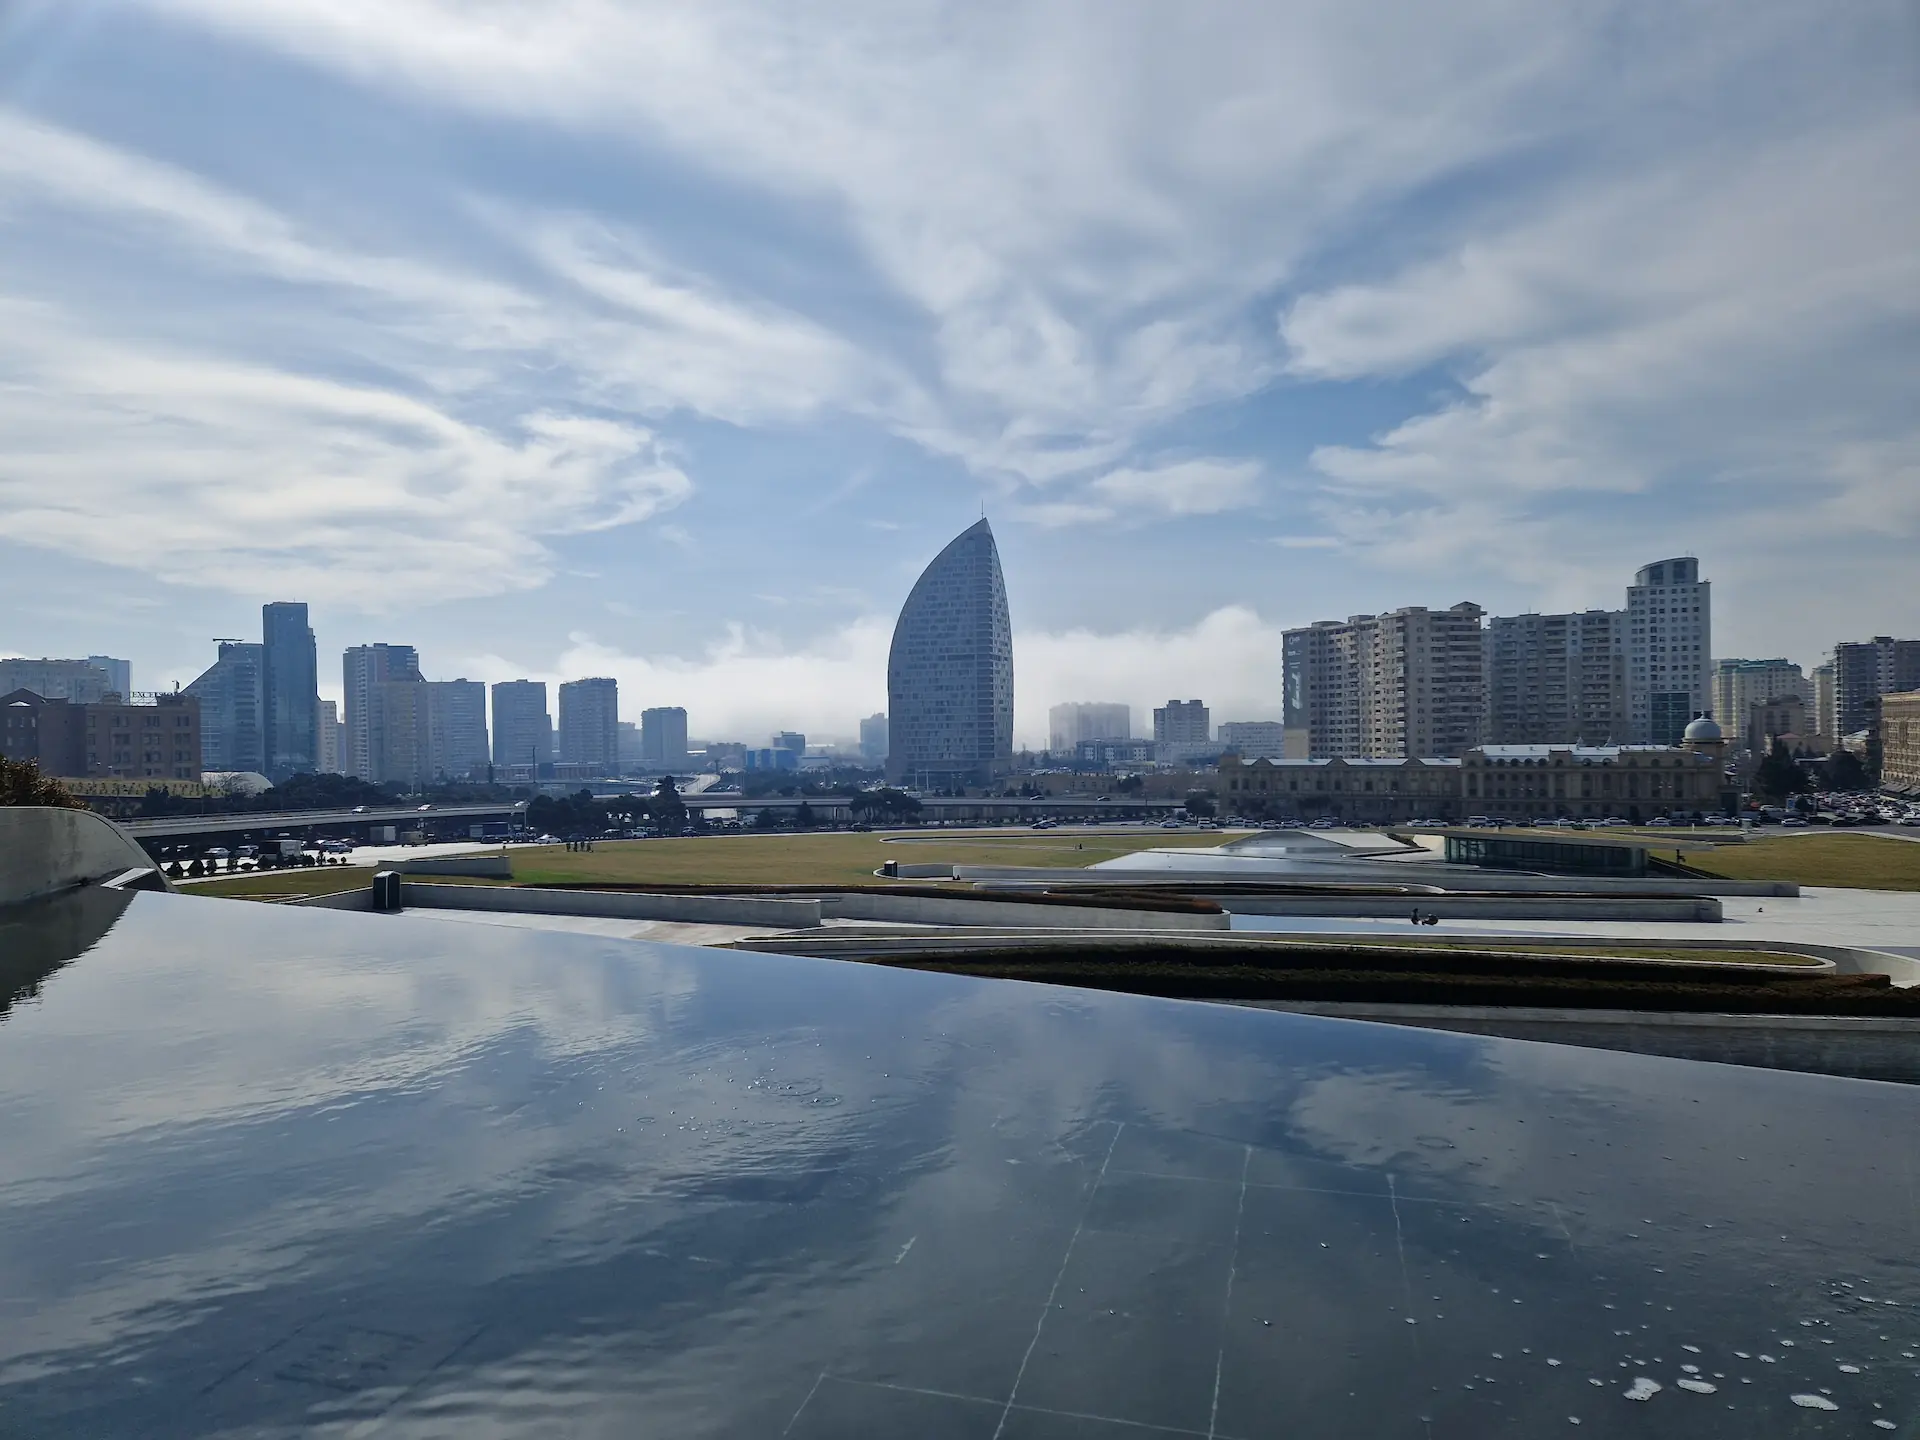 La ville de Bakou au loin, recouverte d'un nuage à ras le sol. Le ciel est bleu et ensoleillé.